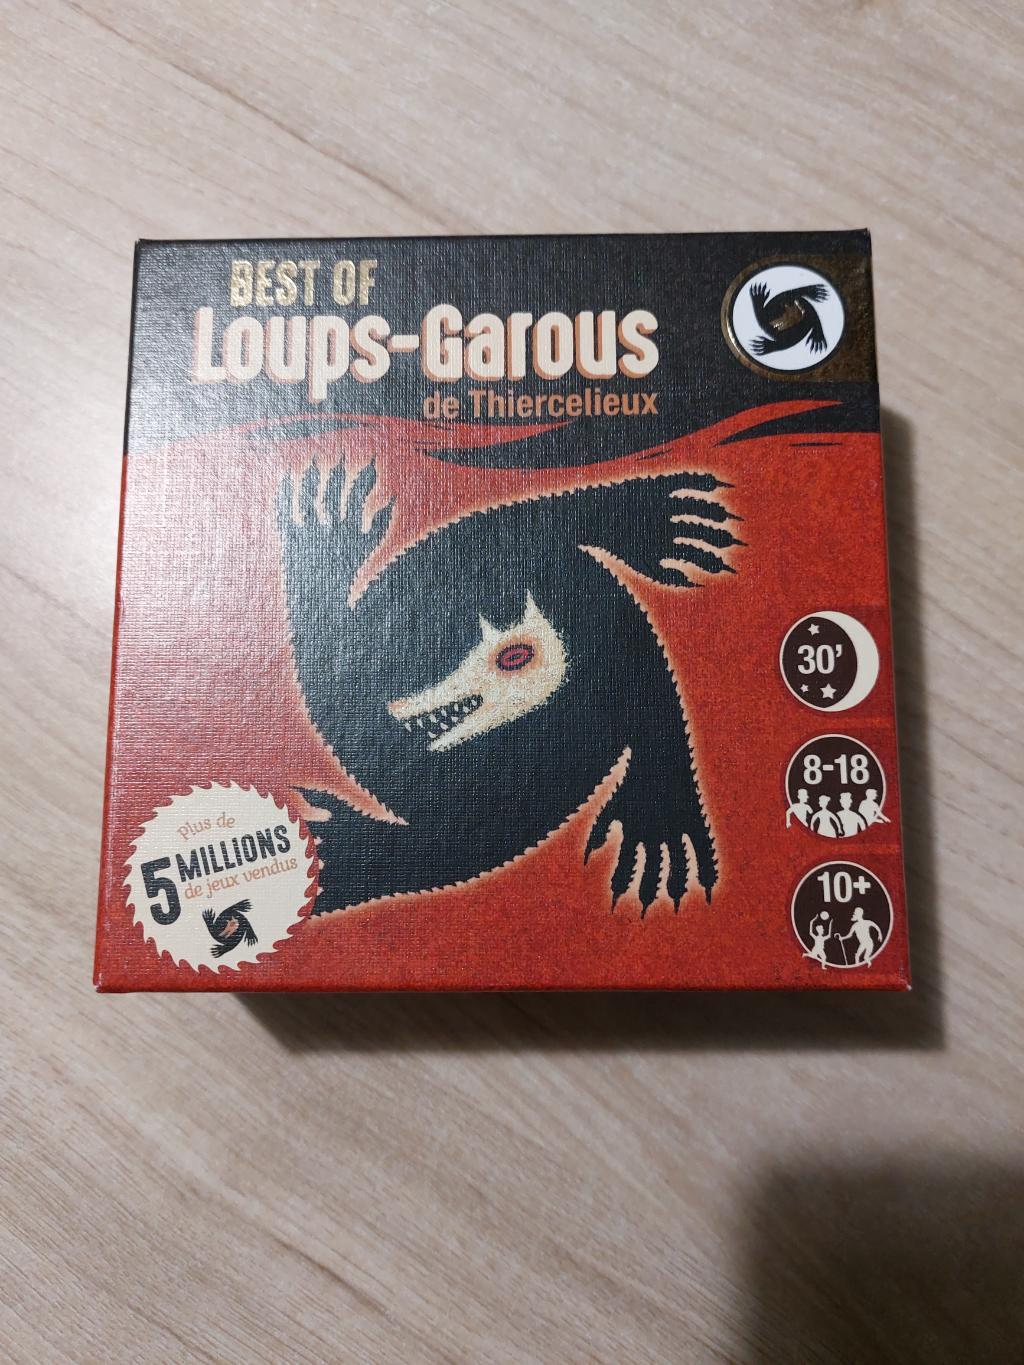 Best Of Loups-garous De Thiercelieux